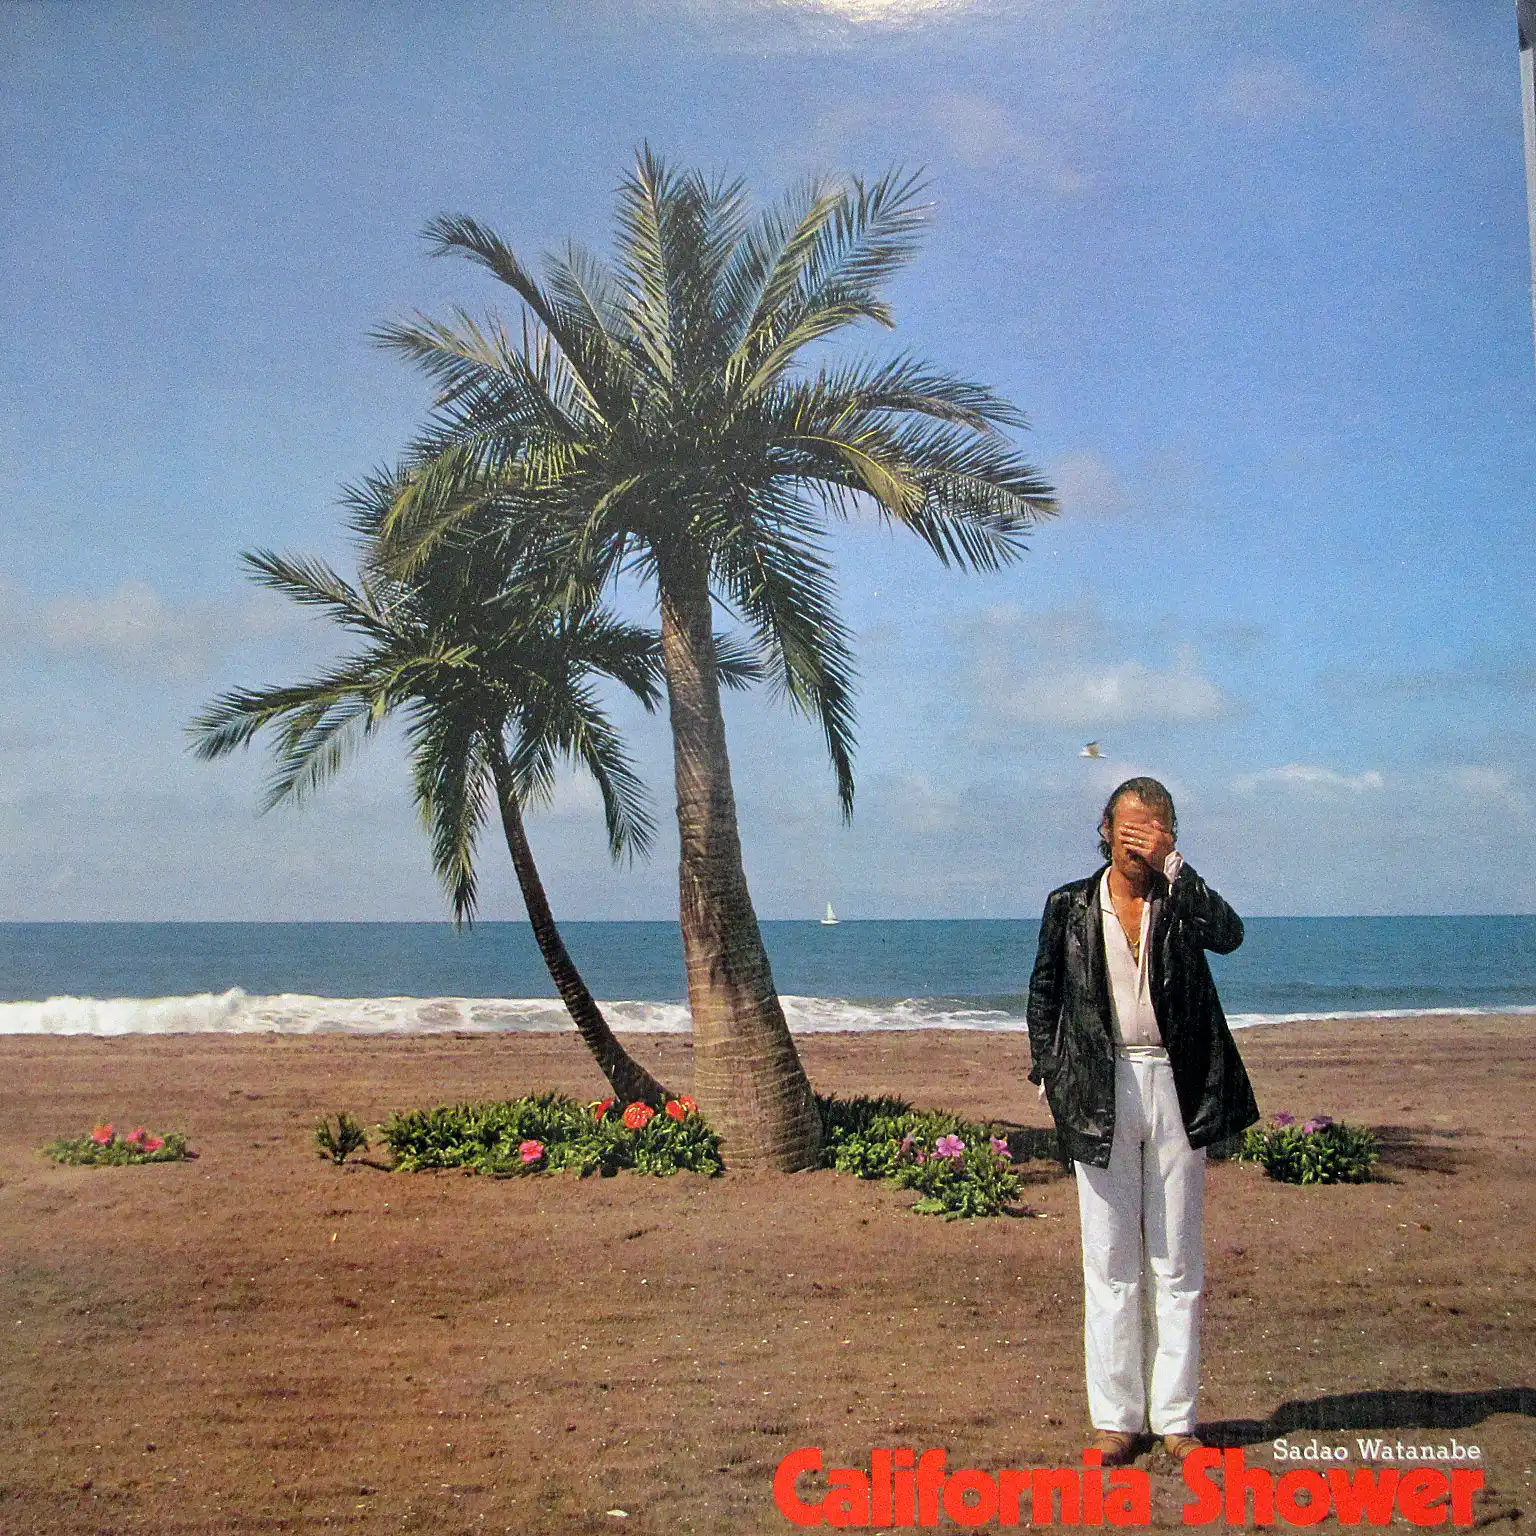 渡辺貞夫 (SADAO WATANABE) / CALIFORNIA SHOWERのレコードジャケット写真